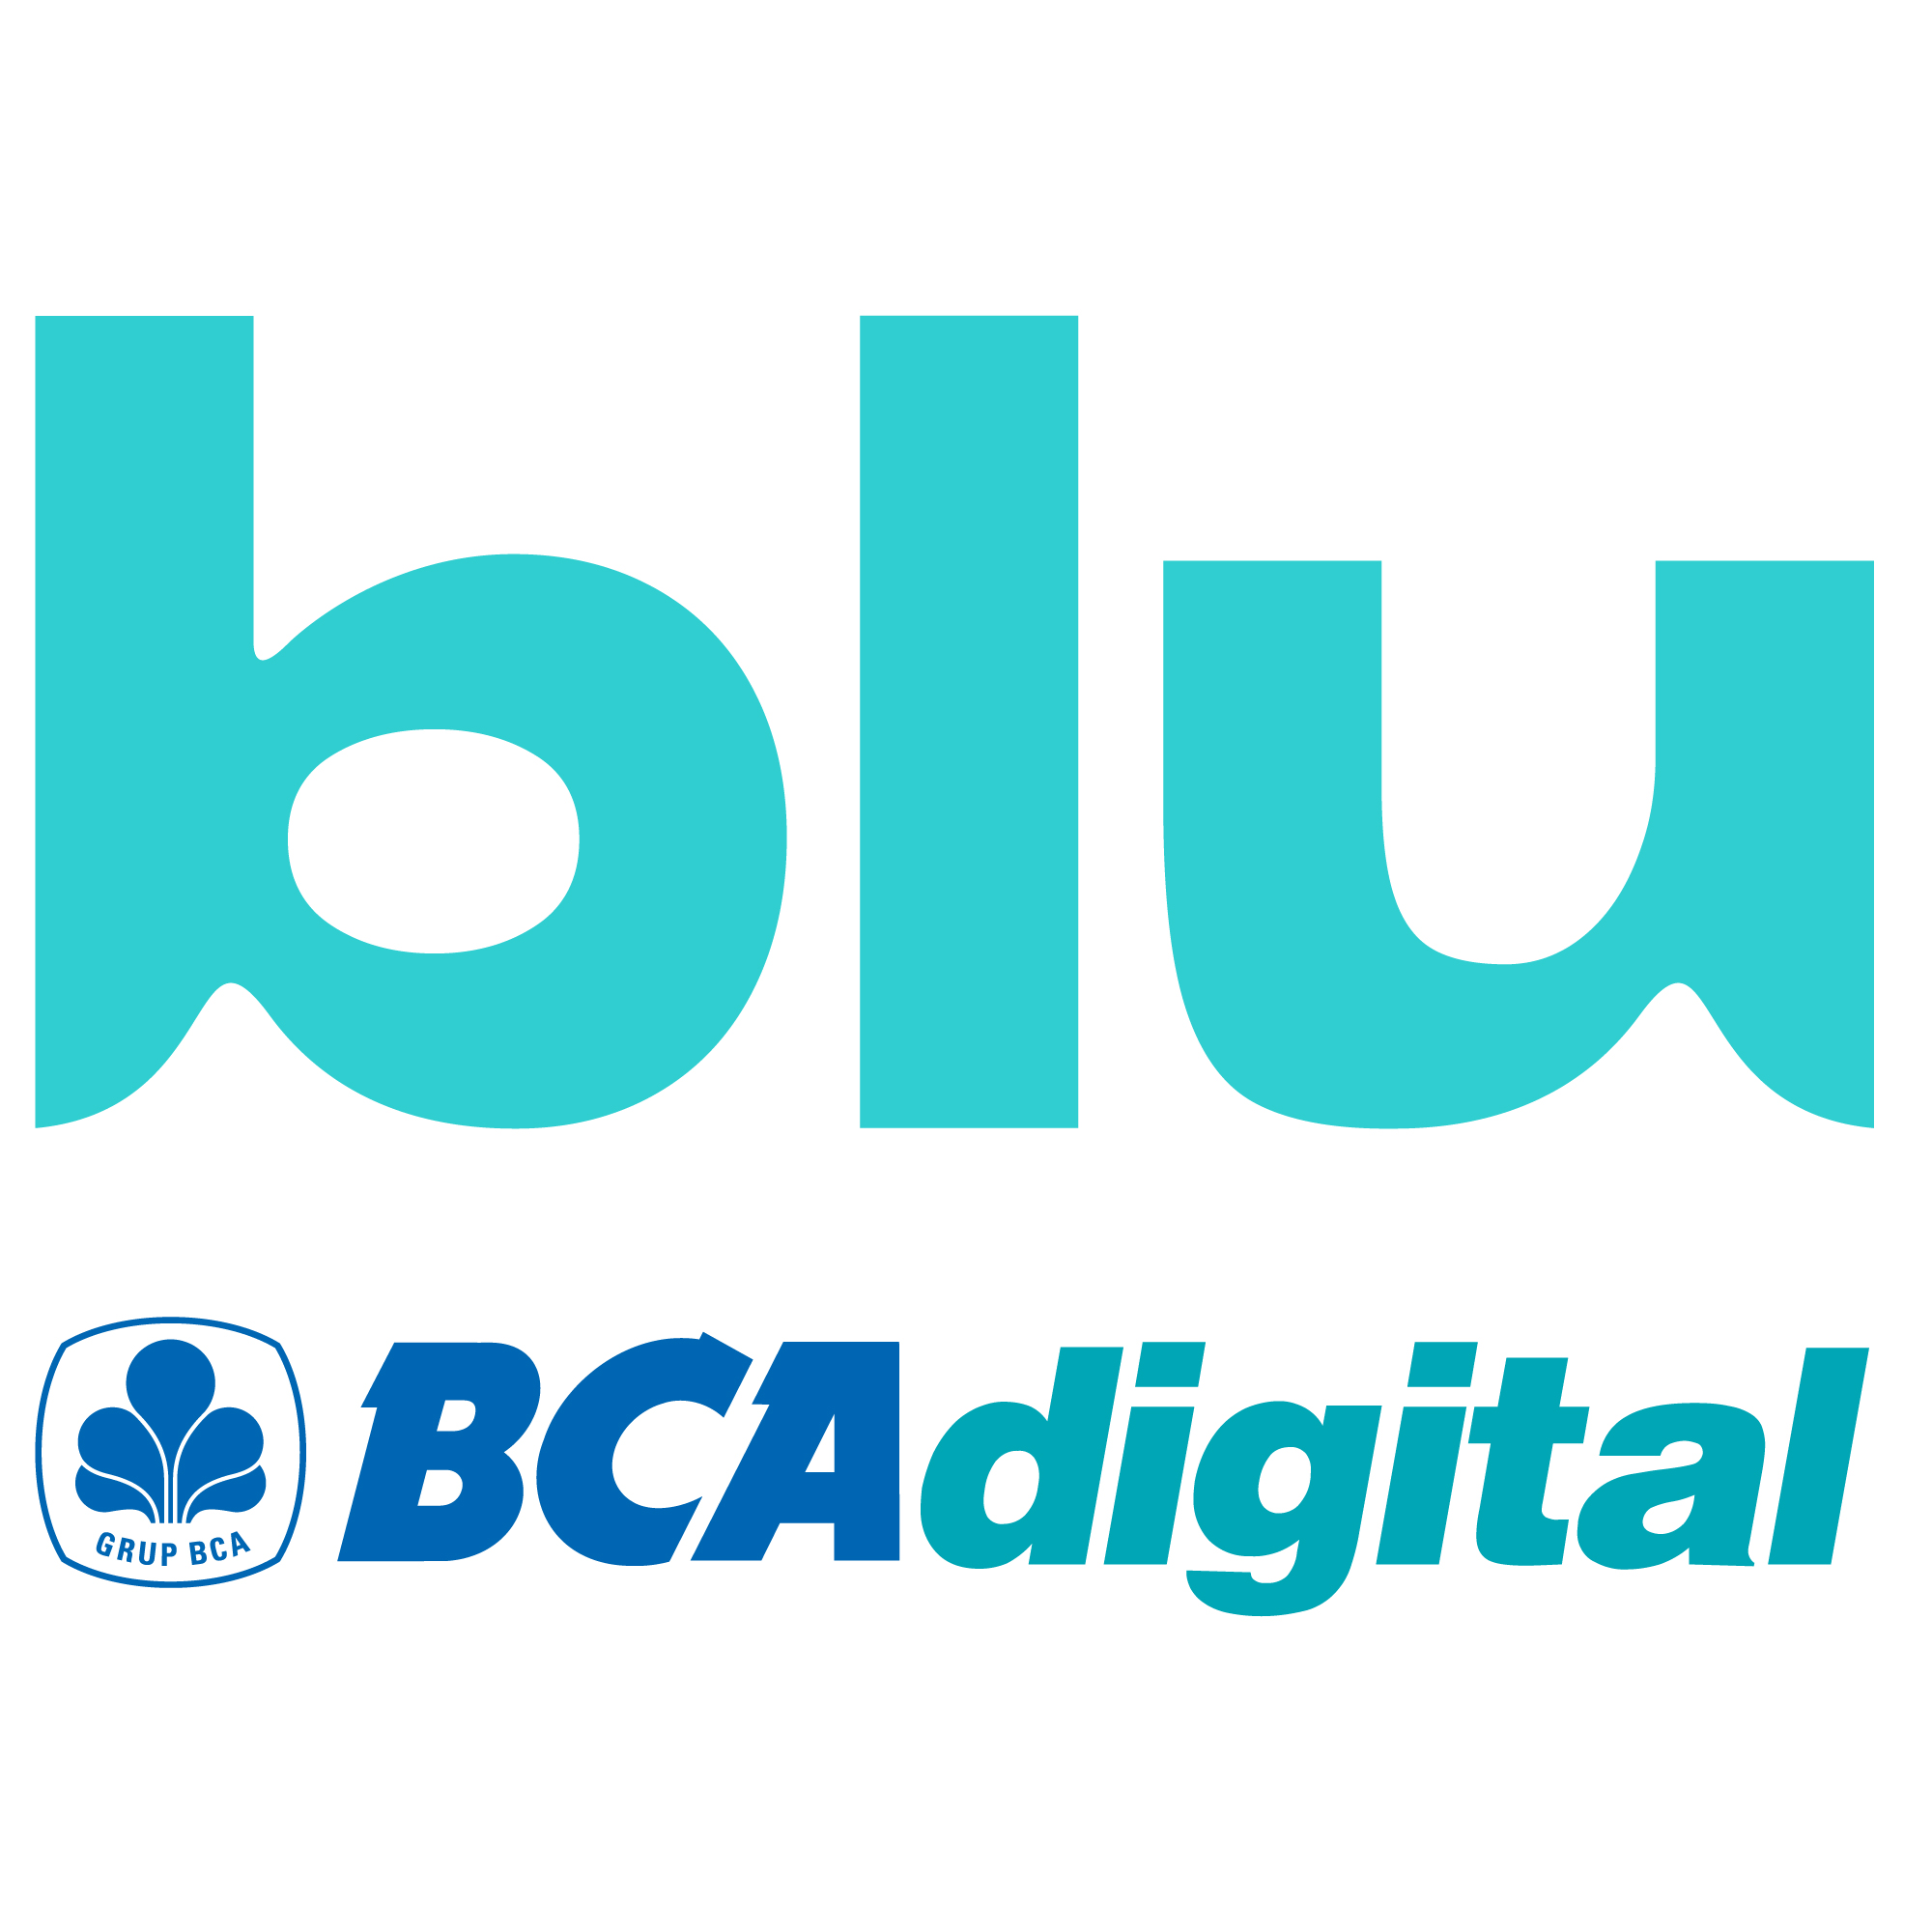 Dukung pemulihan UMKM, BCA Digital gandeng Komunal Finansial